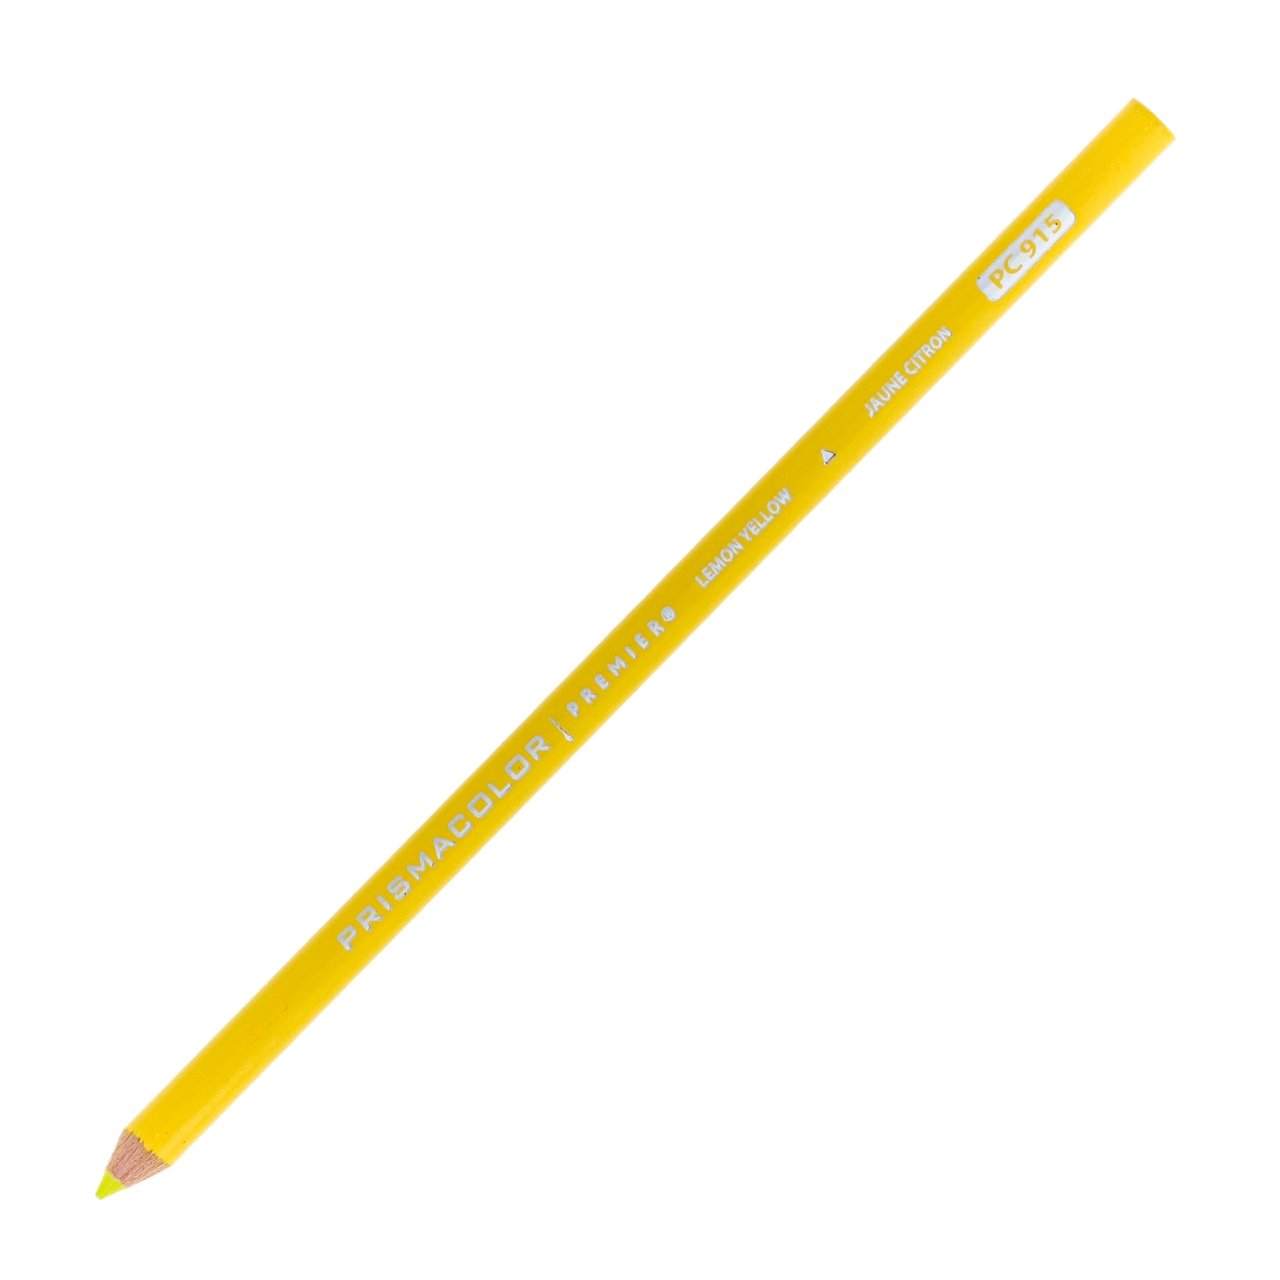 Prismacolor Premier Colored Pencil - Lemon Yellow 915 - merriartist.com